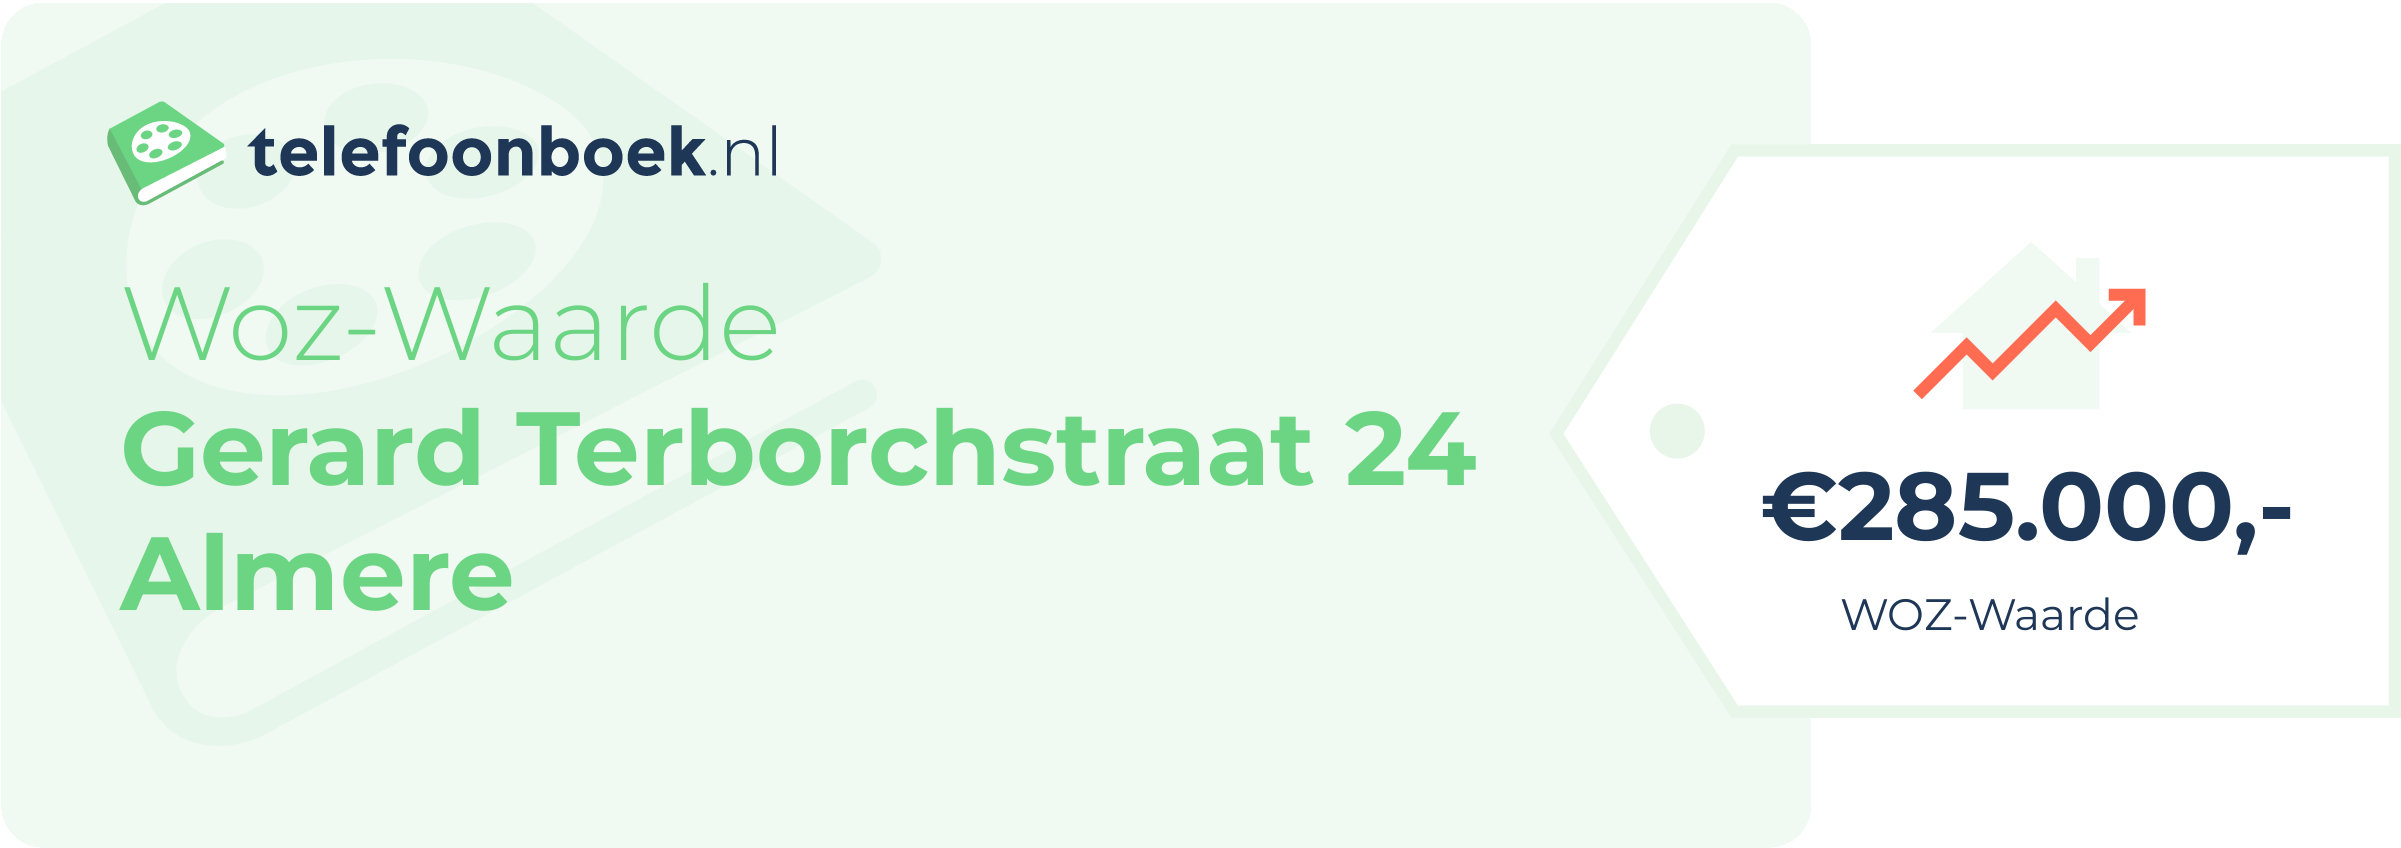 WOZ-waarde Gerard Terborchstraat 24 Almere